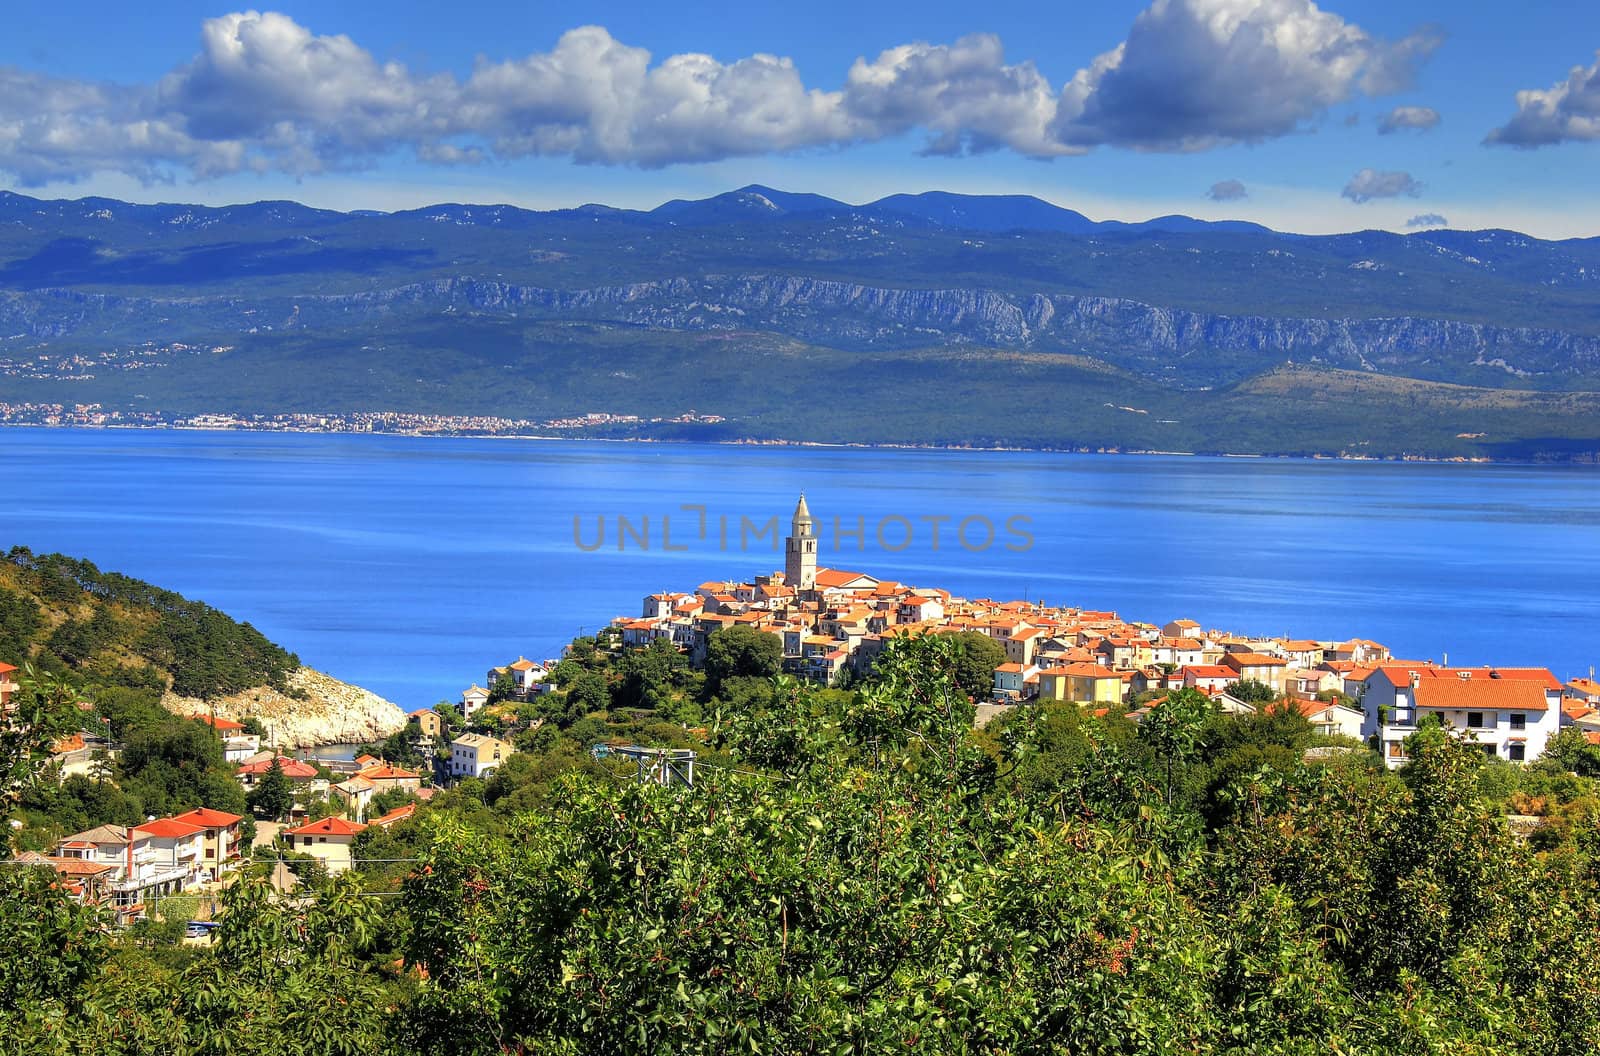 Mediterranean town of Vrbnik, Island of Krk, Croatia by xbrchx